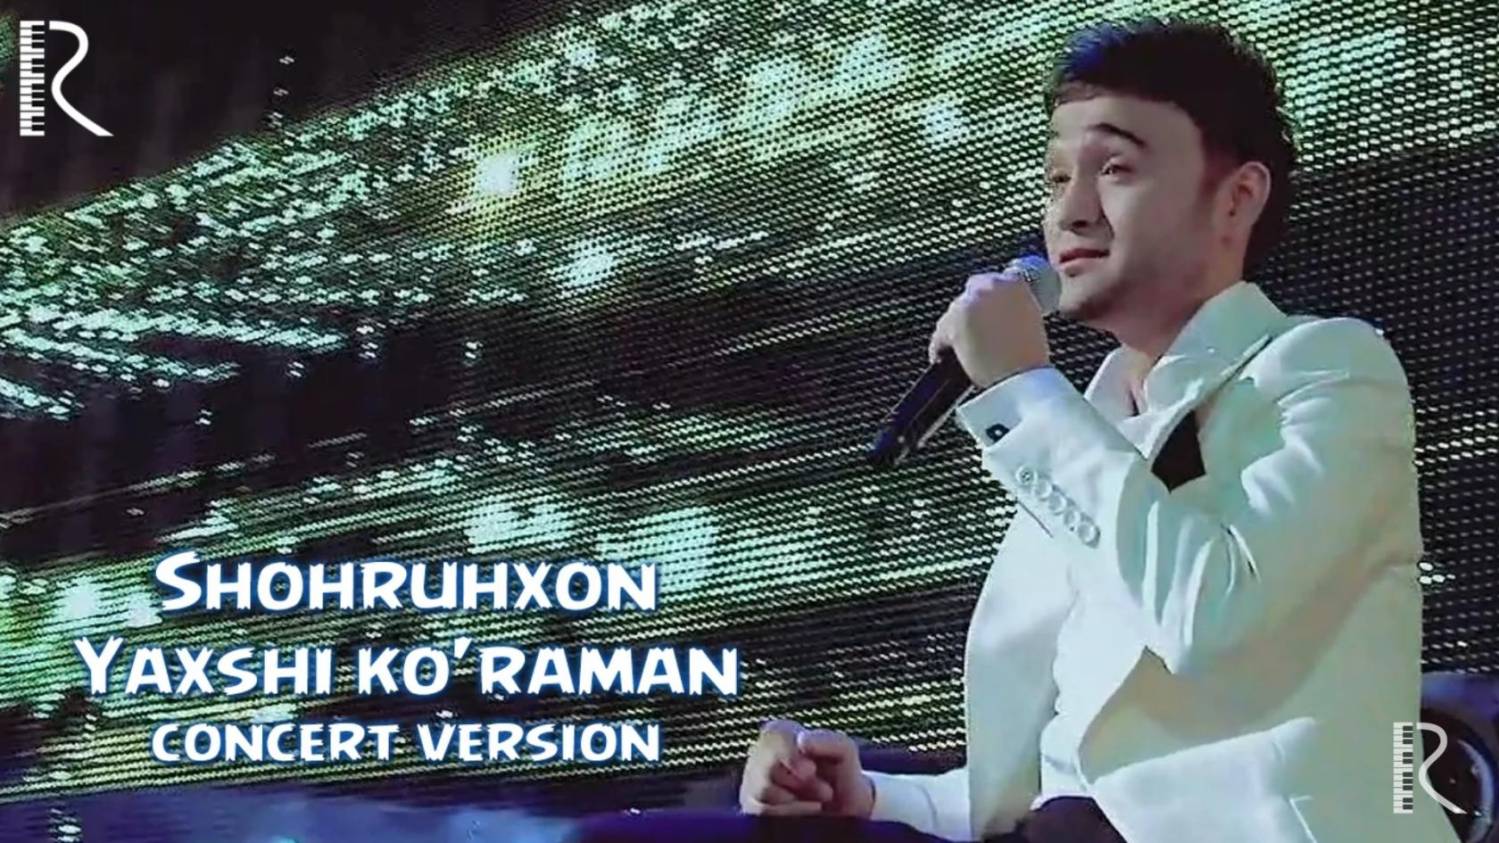 Shohruhxon - Yaxshi ko'raman (concert version) смотреть онлайн